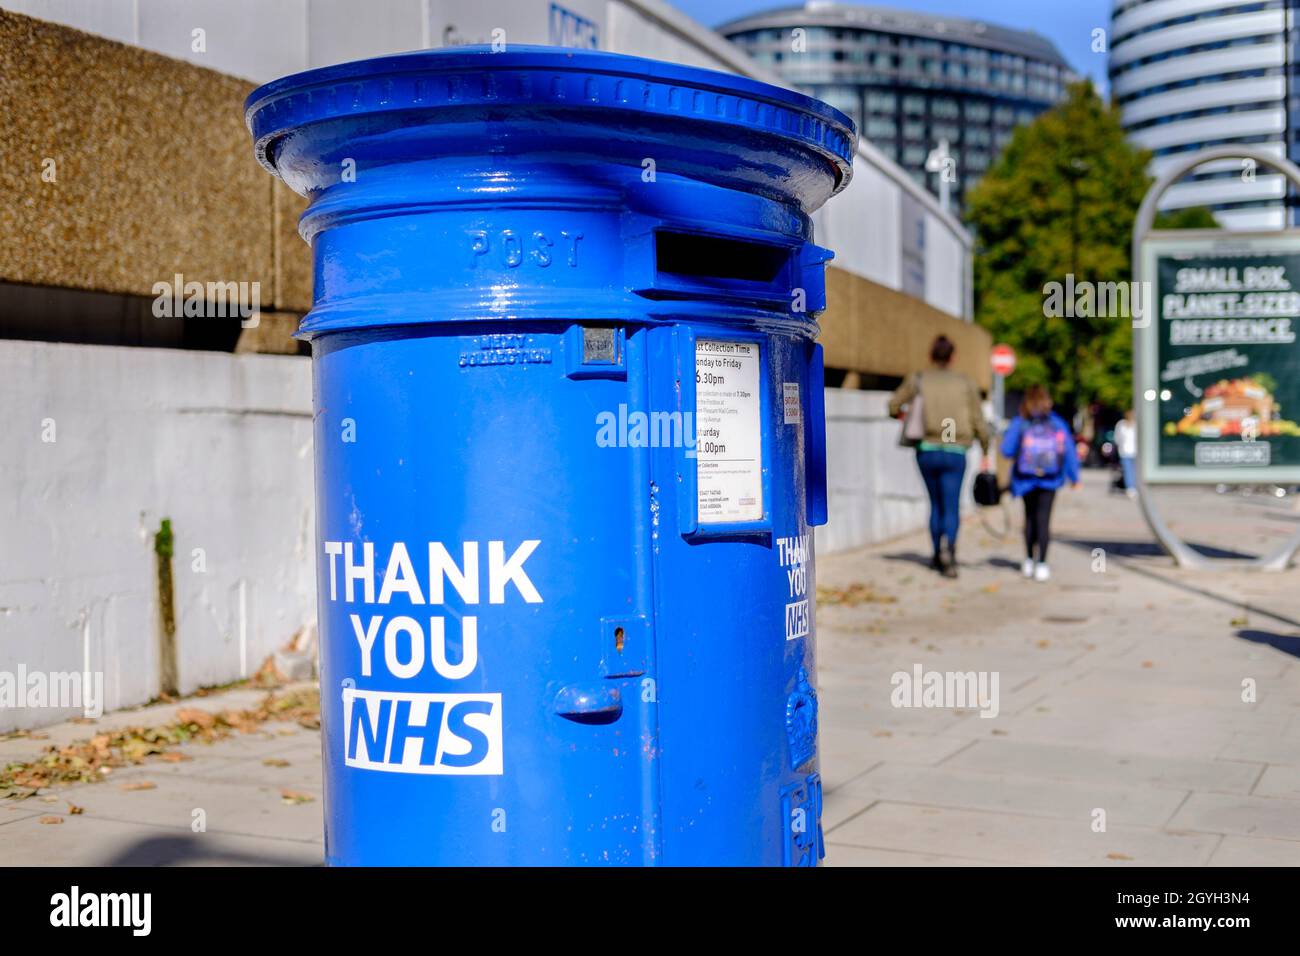 La boîte postale Royal Mail a peint le bleu NHS en reconnaissance du dévouement du personnel pendant la pandémie du coronavirus, à l'extérieur de l'hôpital St Thomas de Londres. Banque D'Images